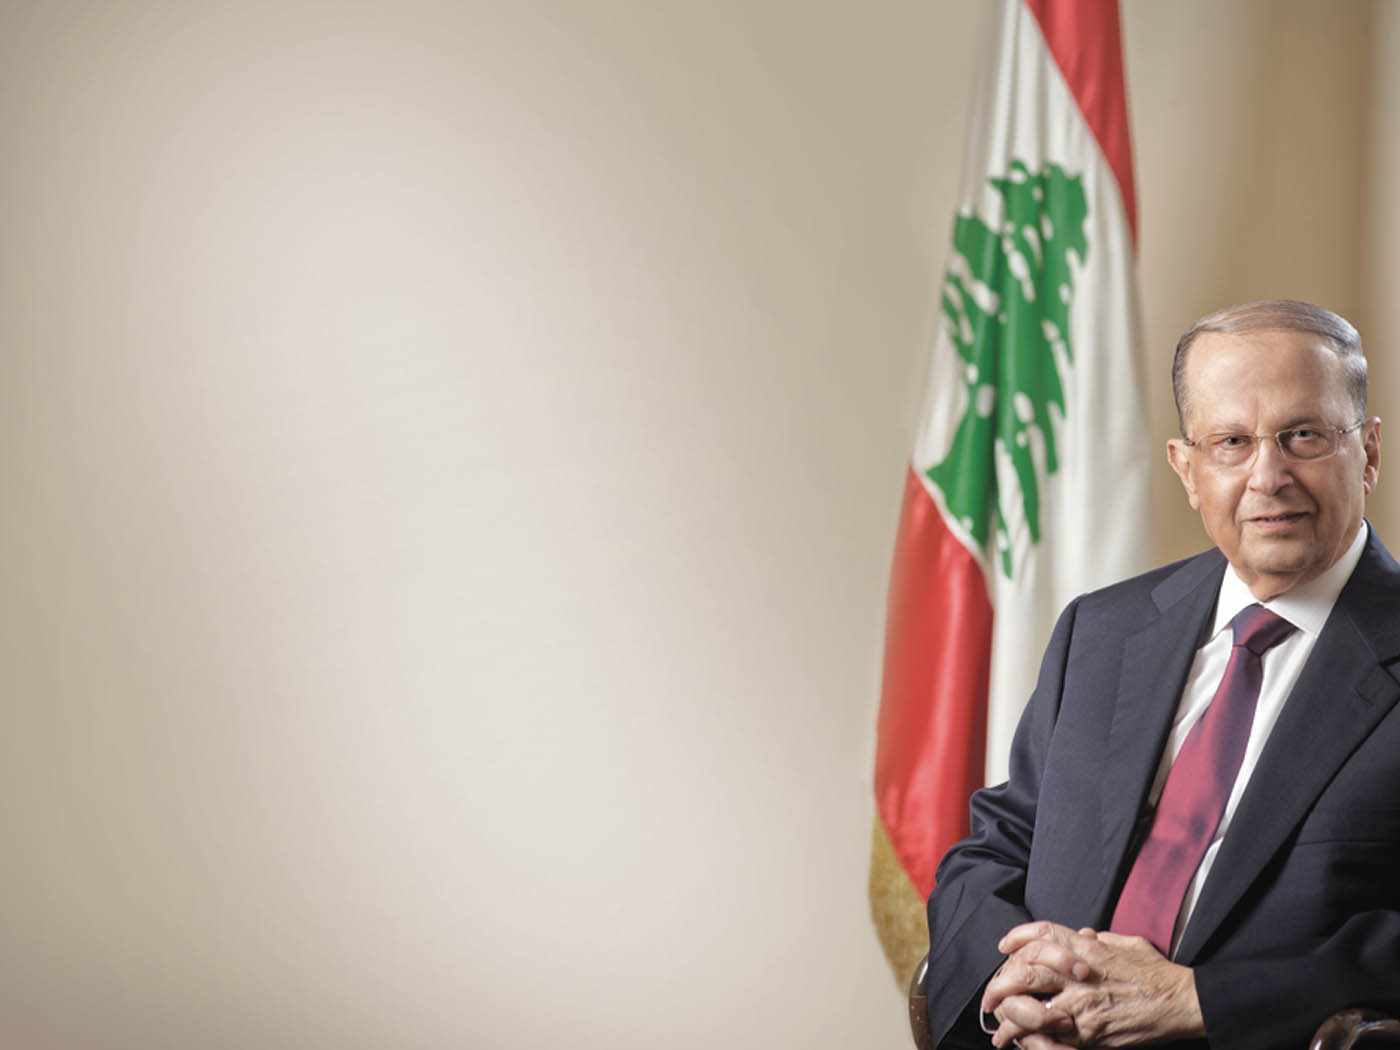 Patriarches et évêques libanais en faveur d’un gouvernement de réconciliation nationale